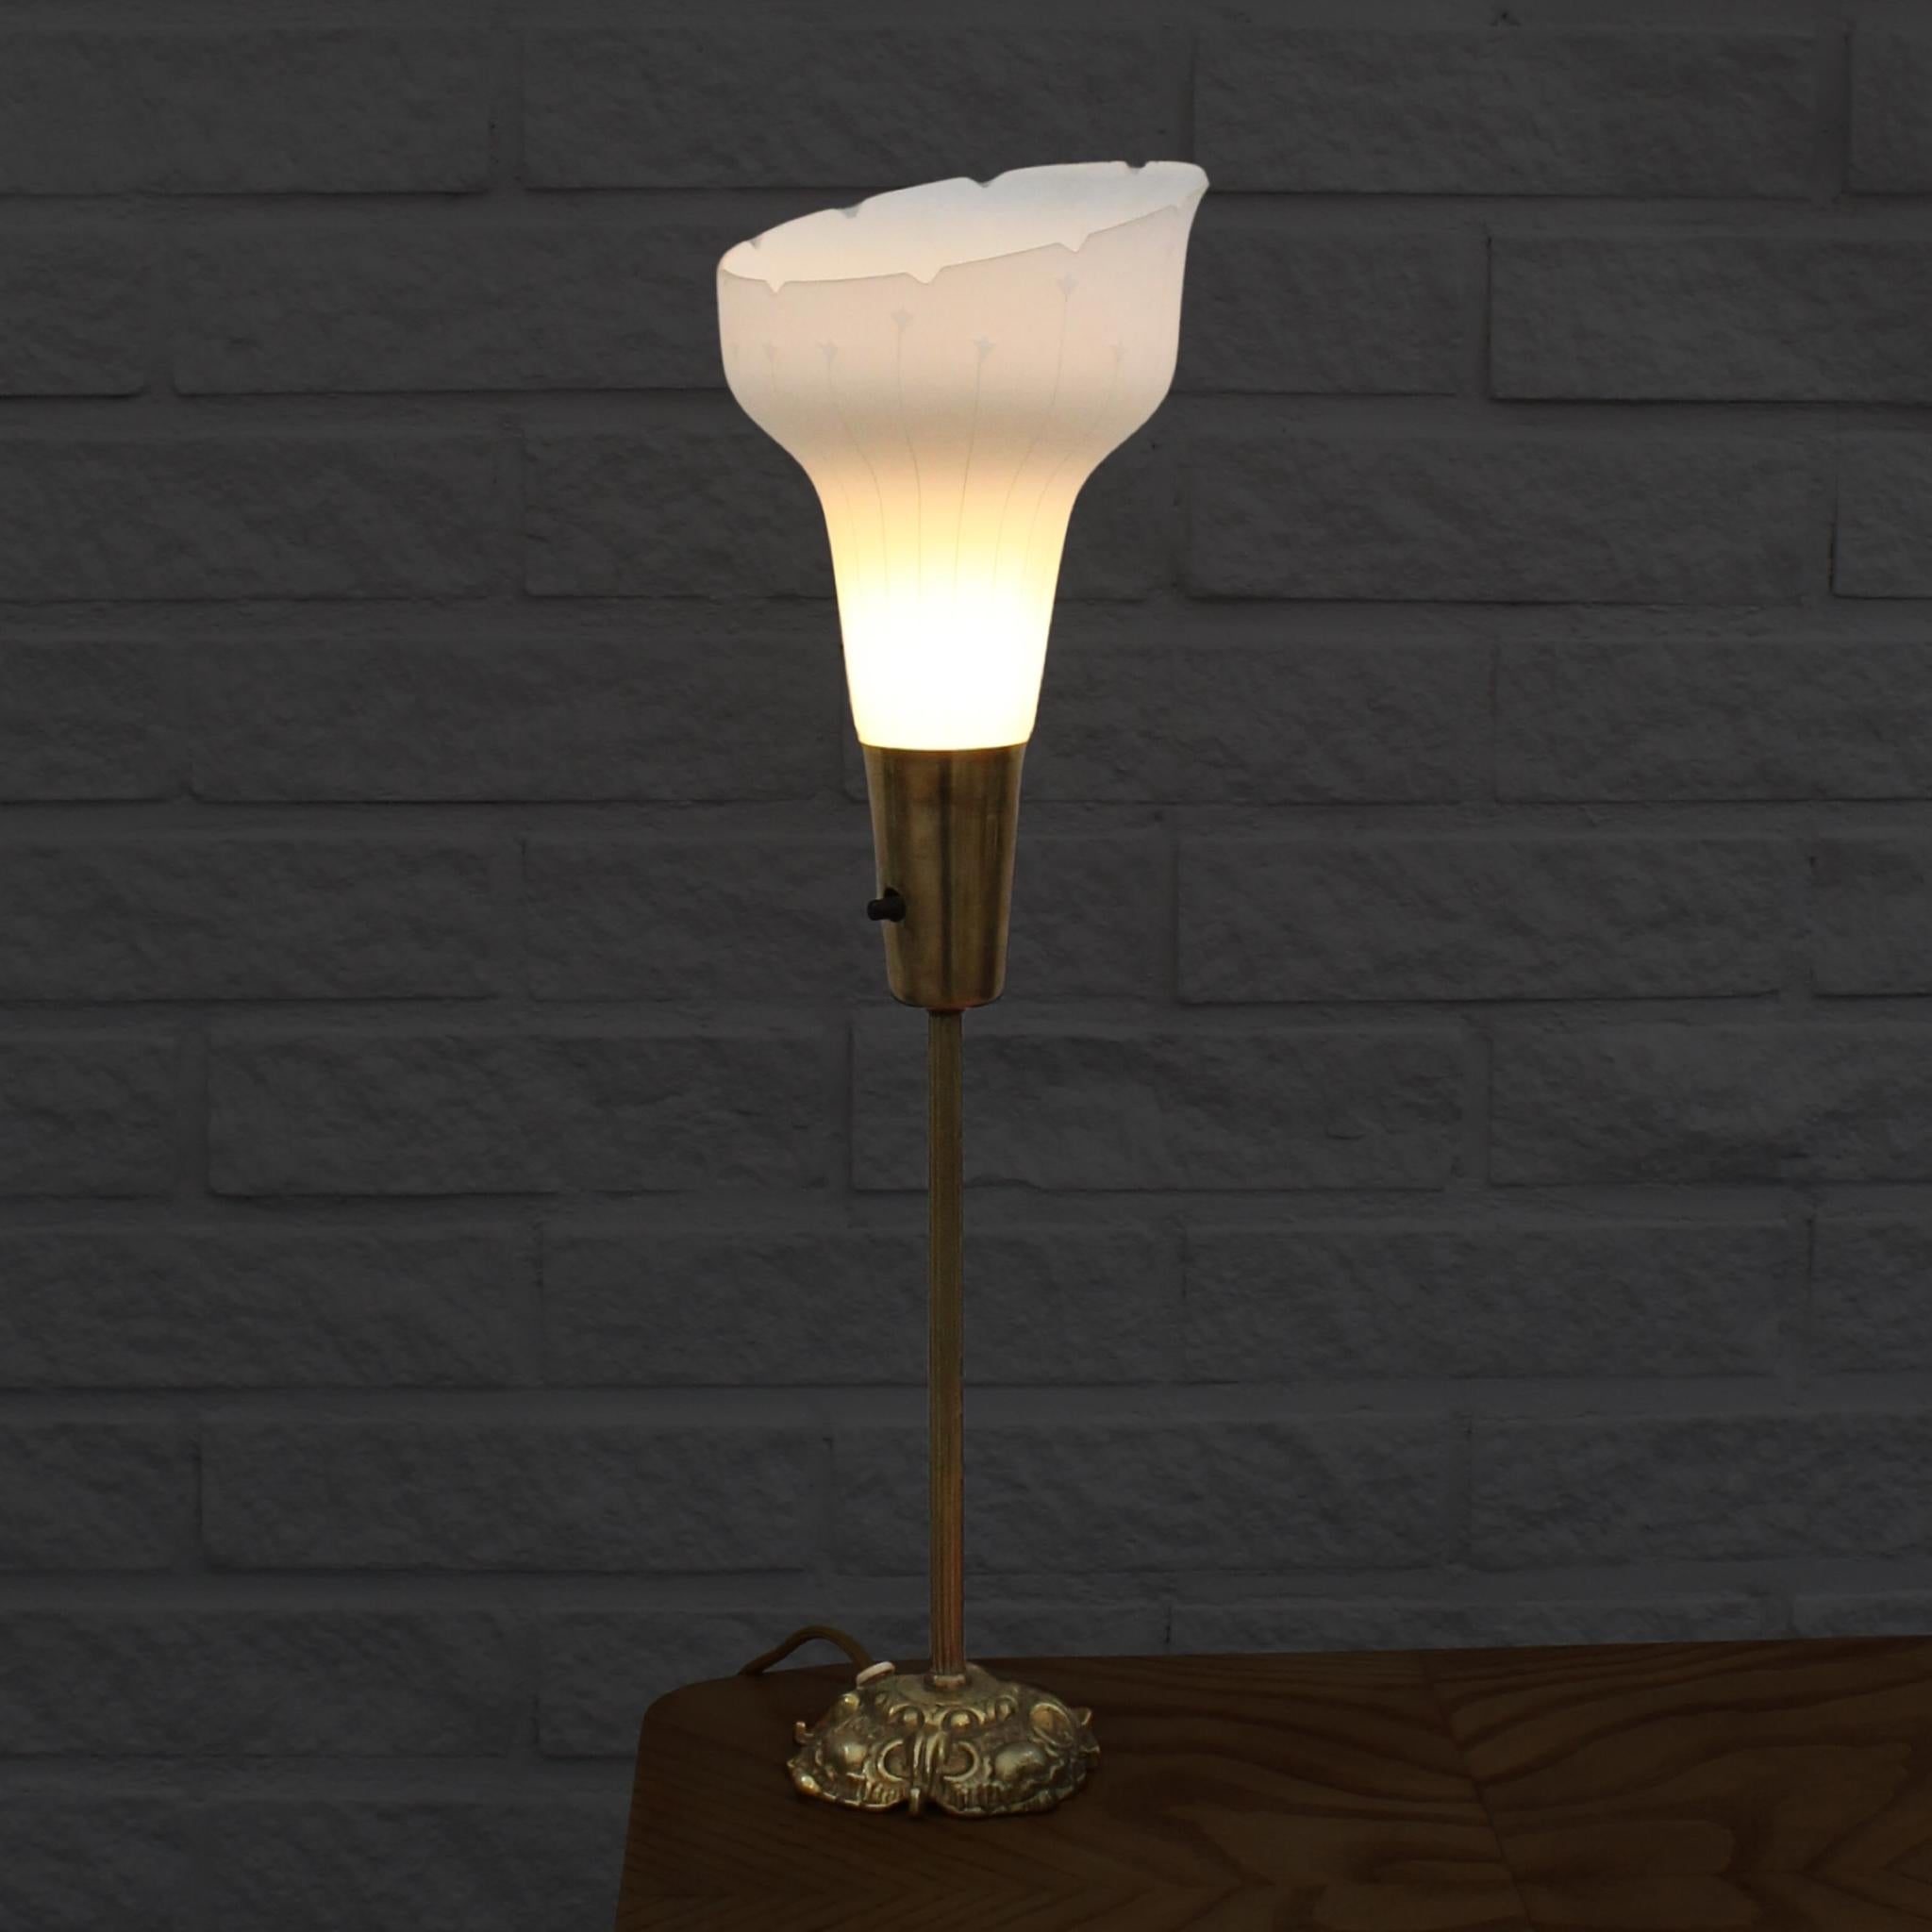 Lampe de table suédoise à éclairage vers le haut produite par Eric Wärnå à Värnamo. La base de la lampe est en laiton et comprend un interrupteur intégré. Elle est ornée d'un abat-jour en verre gravé présentant un motif géométrique attrayant. Le